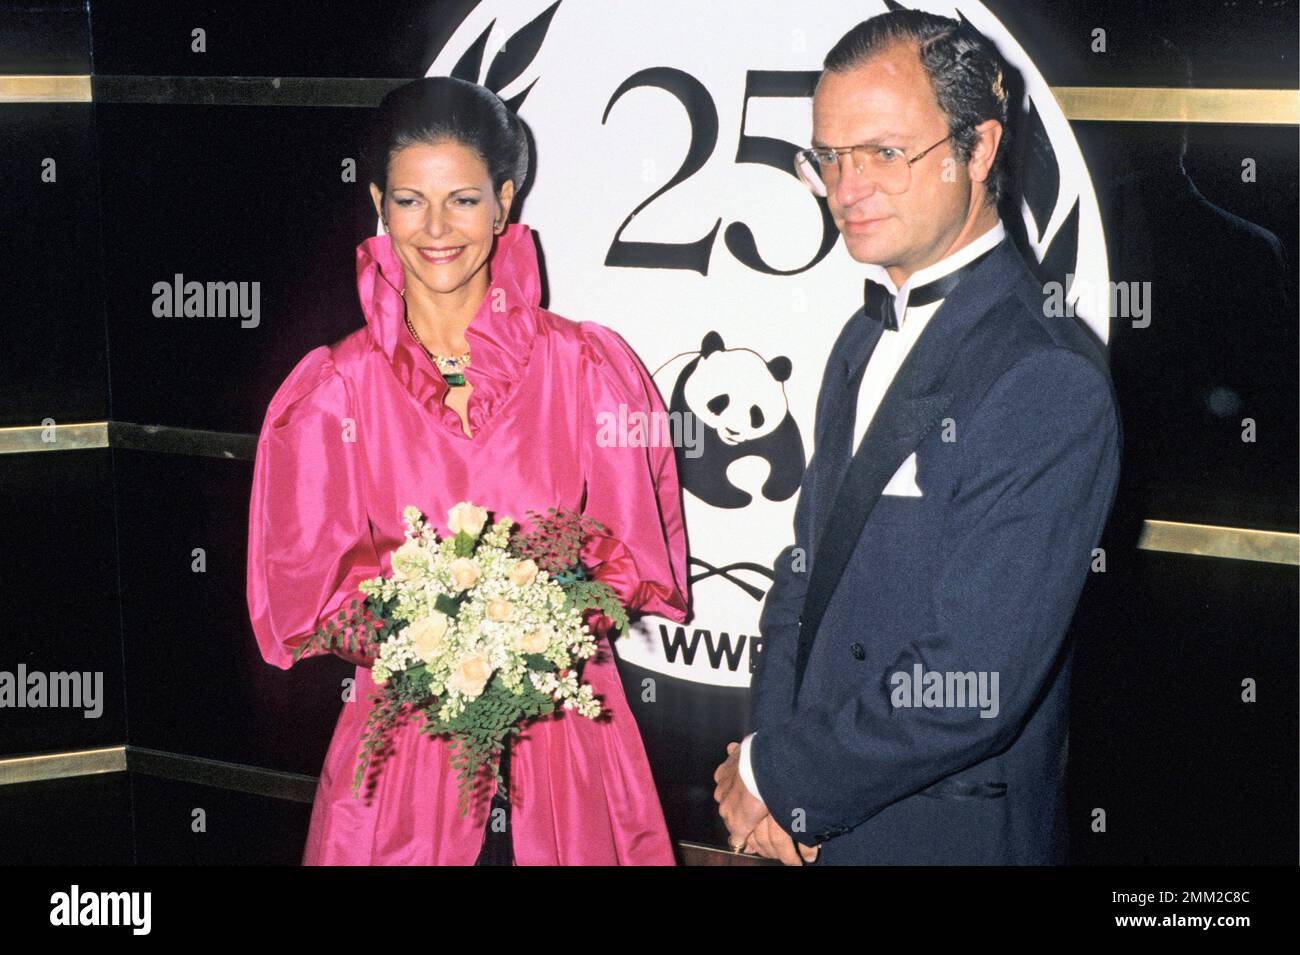 Carl XVI Gustaf, roi de Suède. Né le 30 avril 1946. Le roi Carl XVI Gustaf et la reine Silvia Renate Sommerlath 1988. Banque D'Images